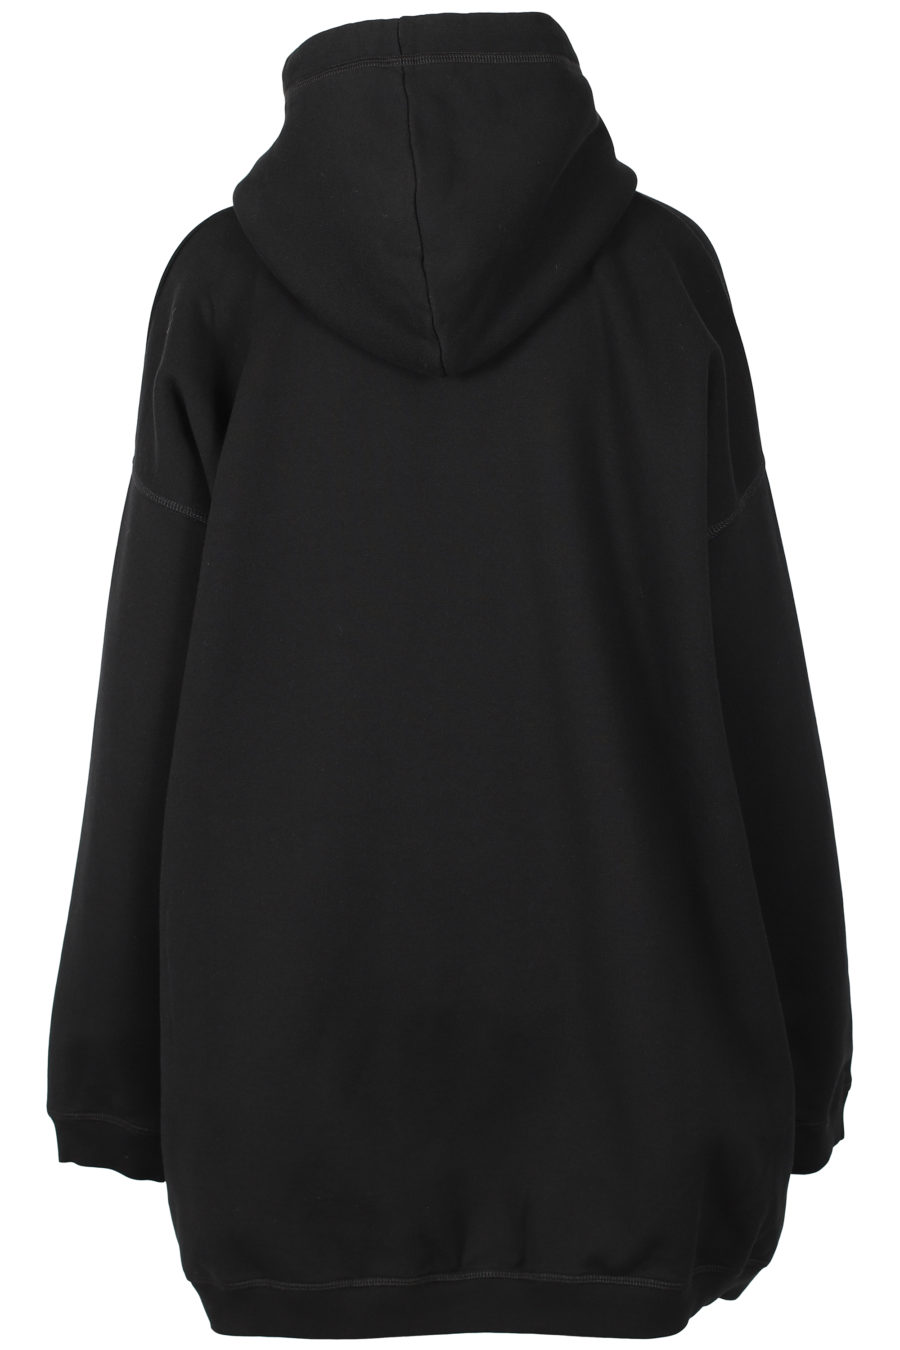 Vestido sudadera negro con logo blanco - IMG 3253